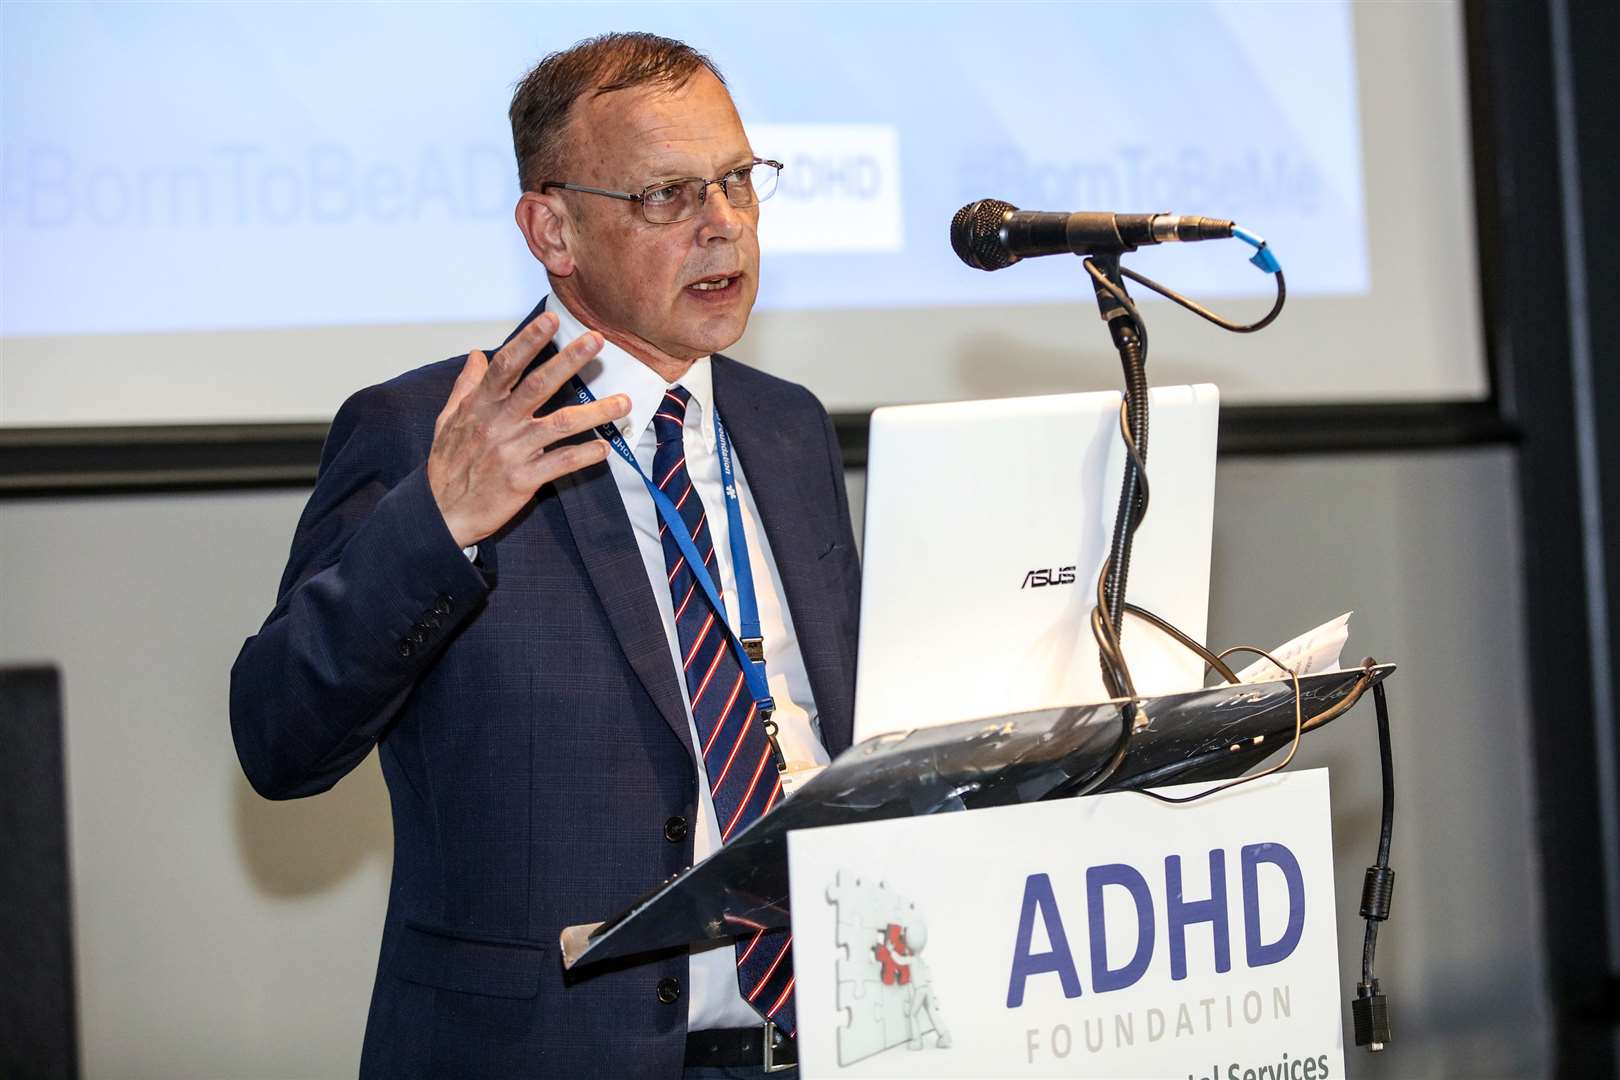 Dr Tony Lloyd, CEO of the ADHD Foundation